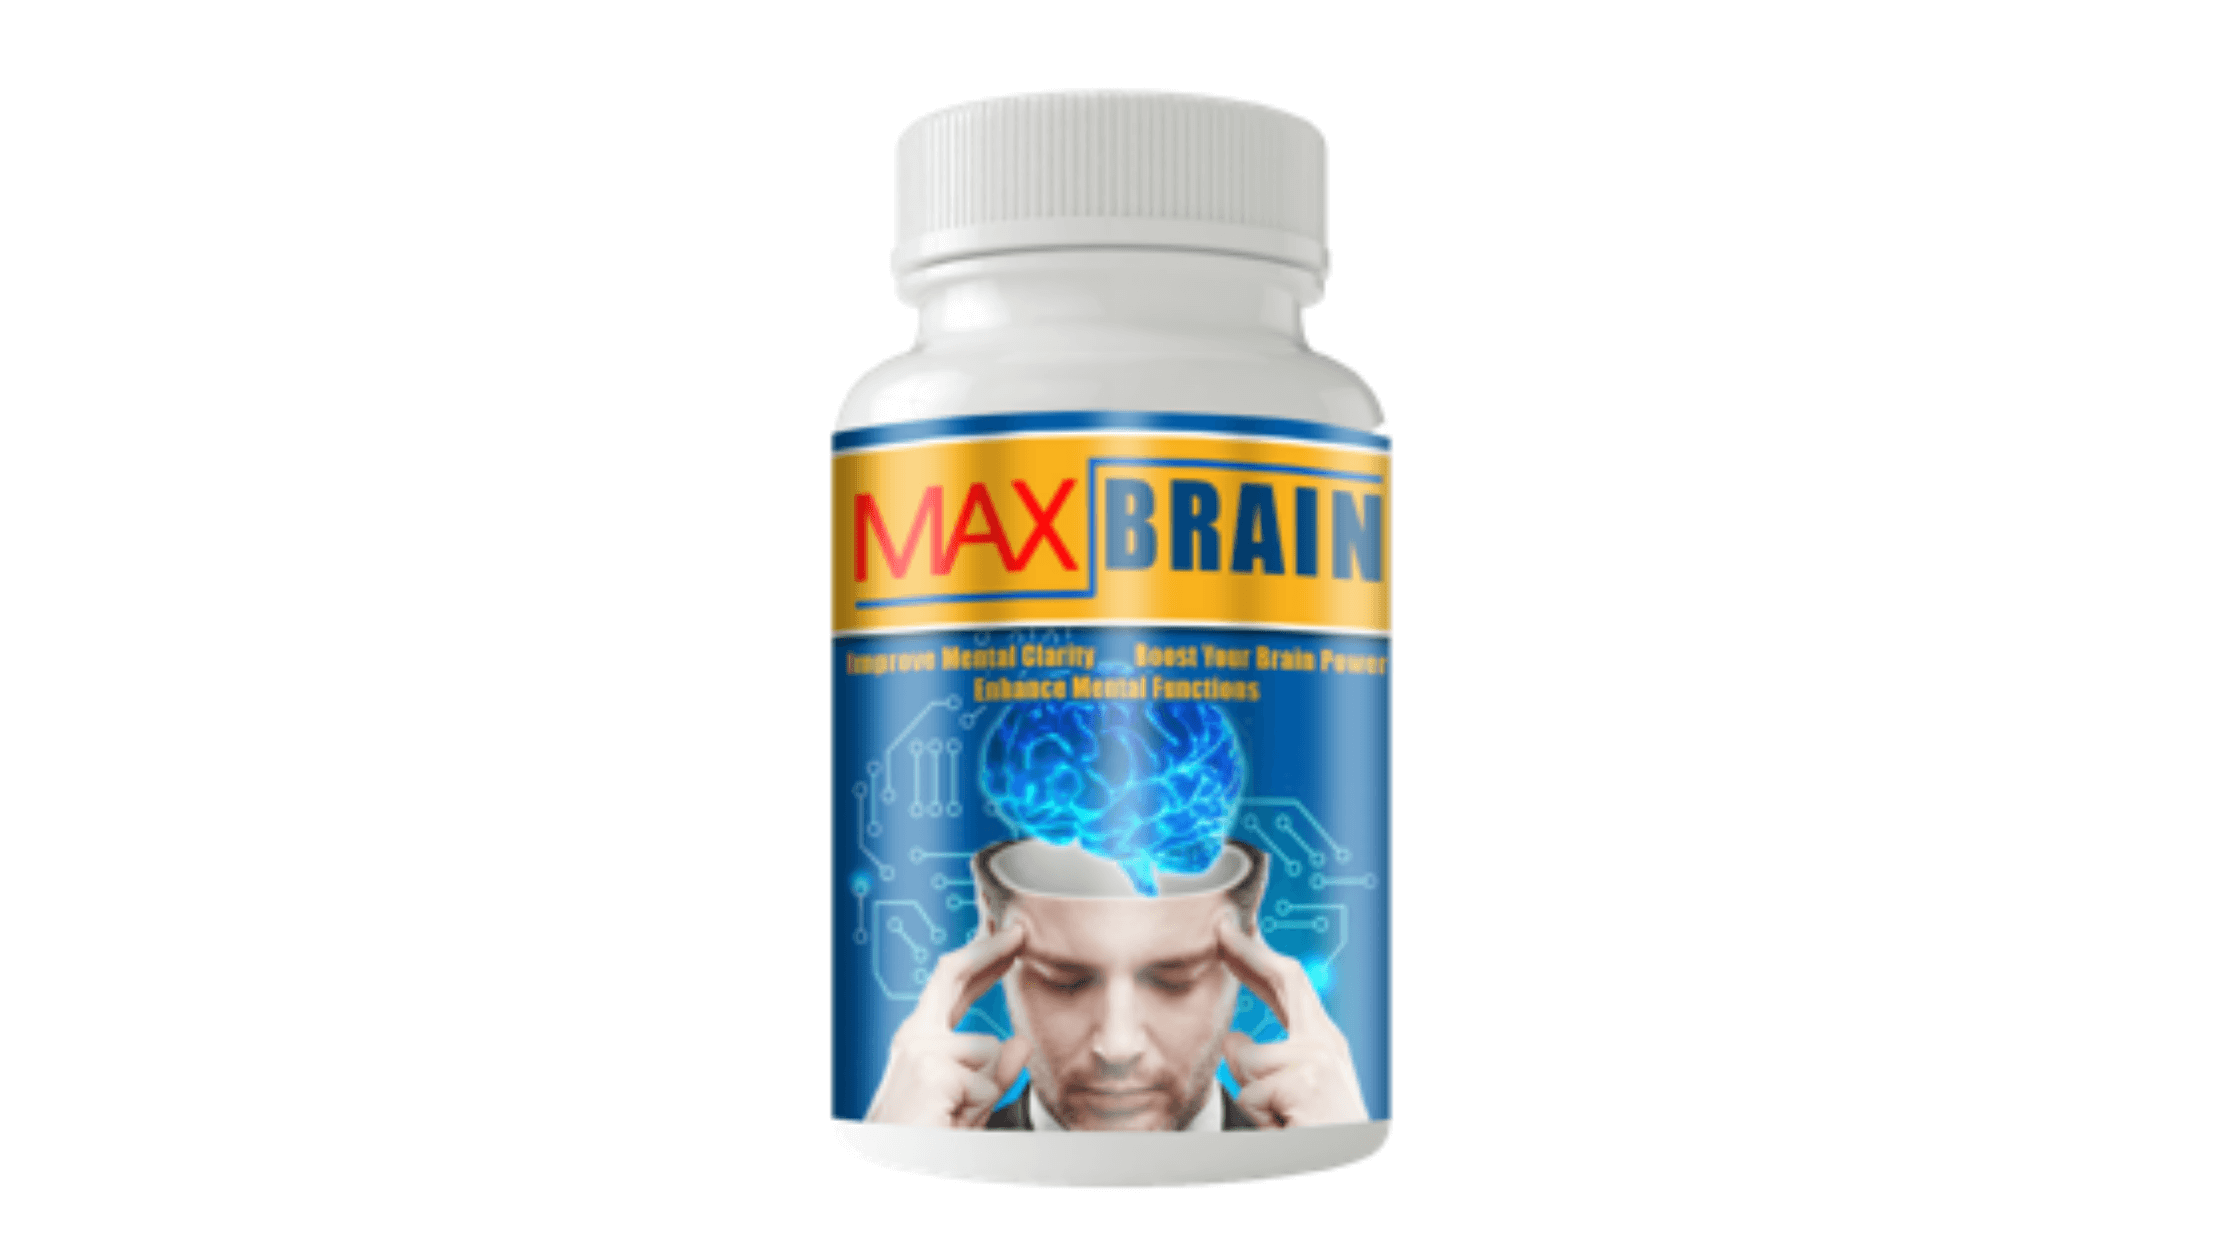 Max Brain Reviews